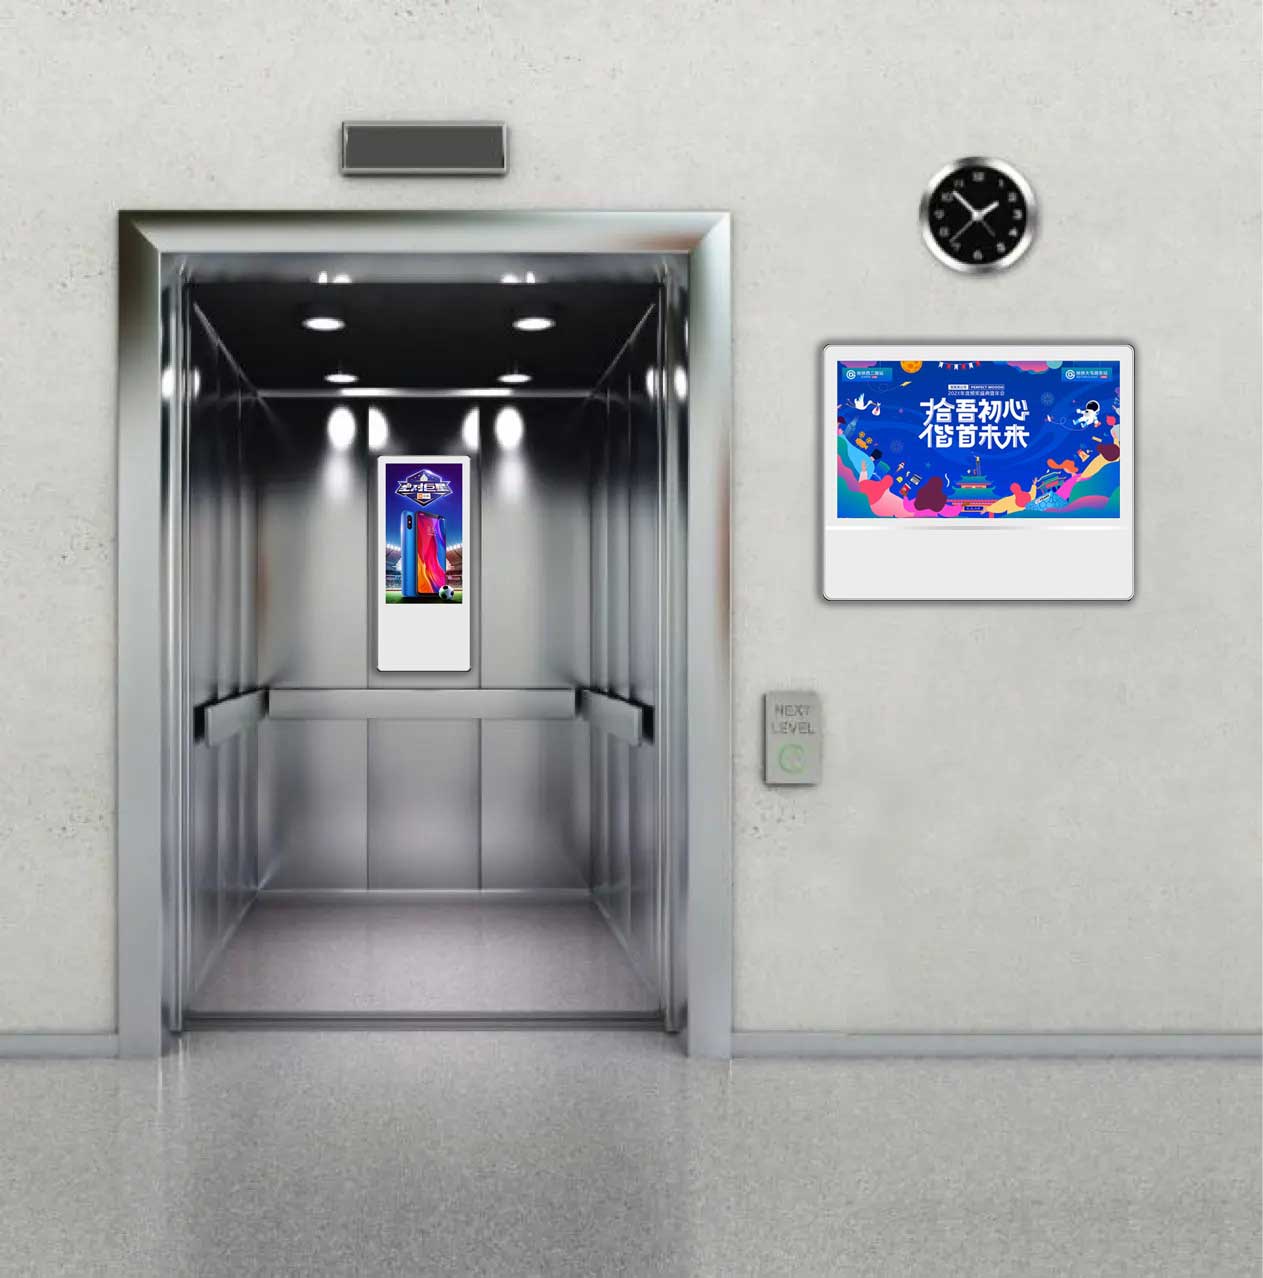 Affichages publicitaires LCD d'ascenseur